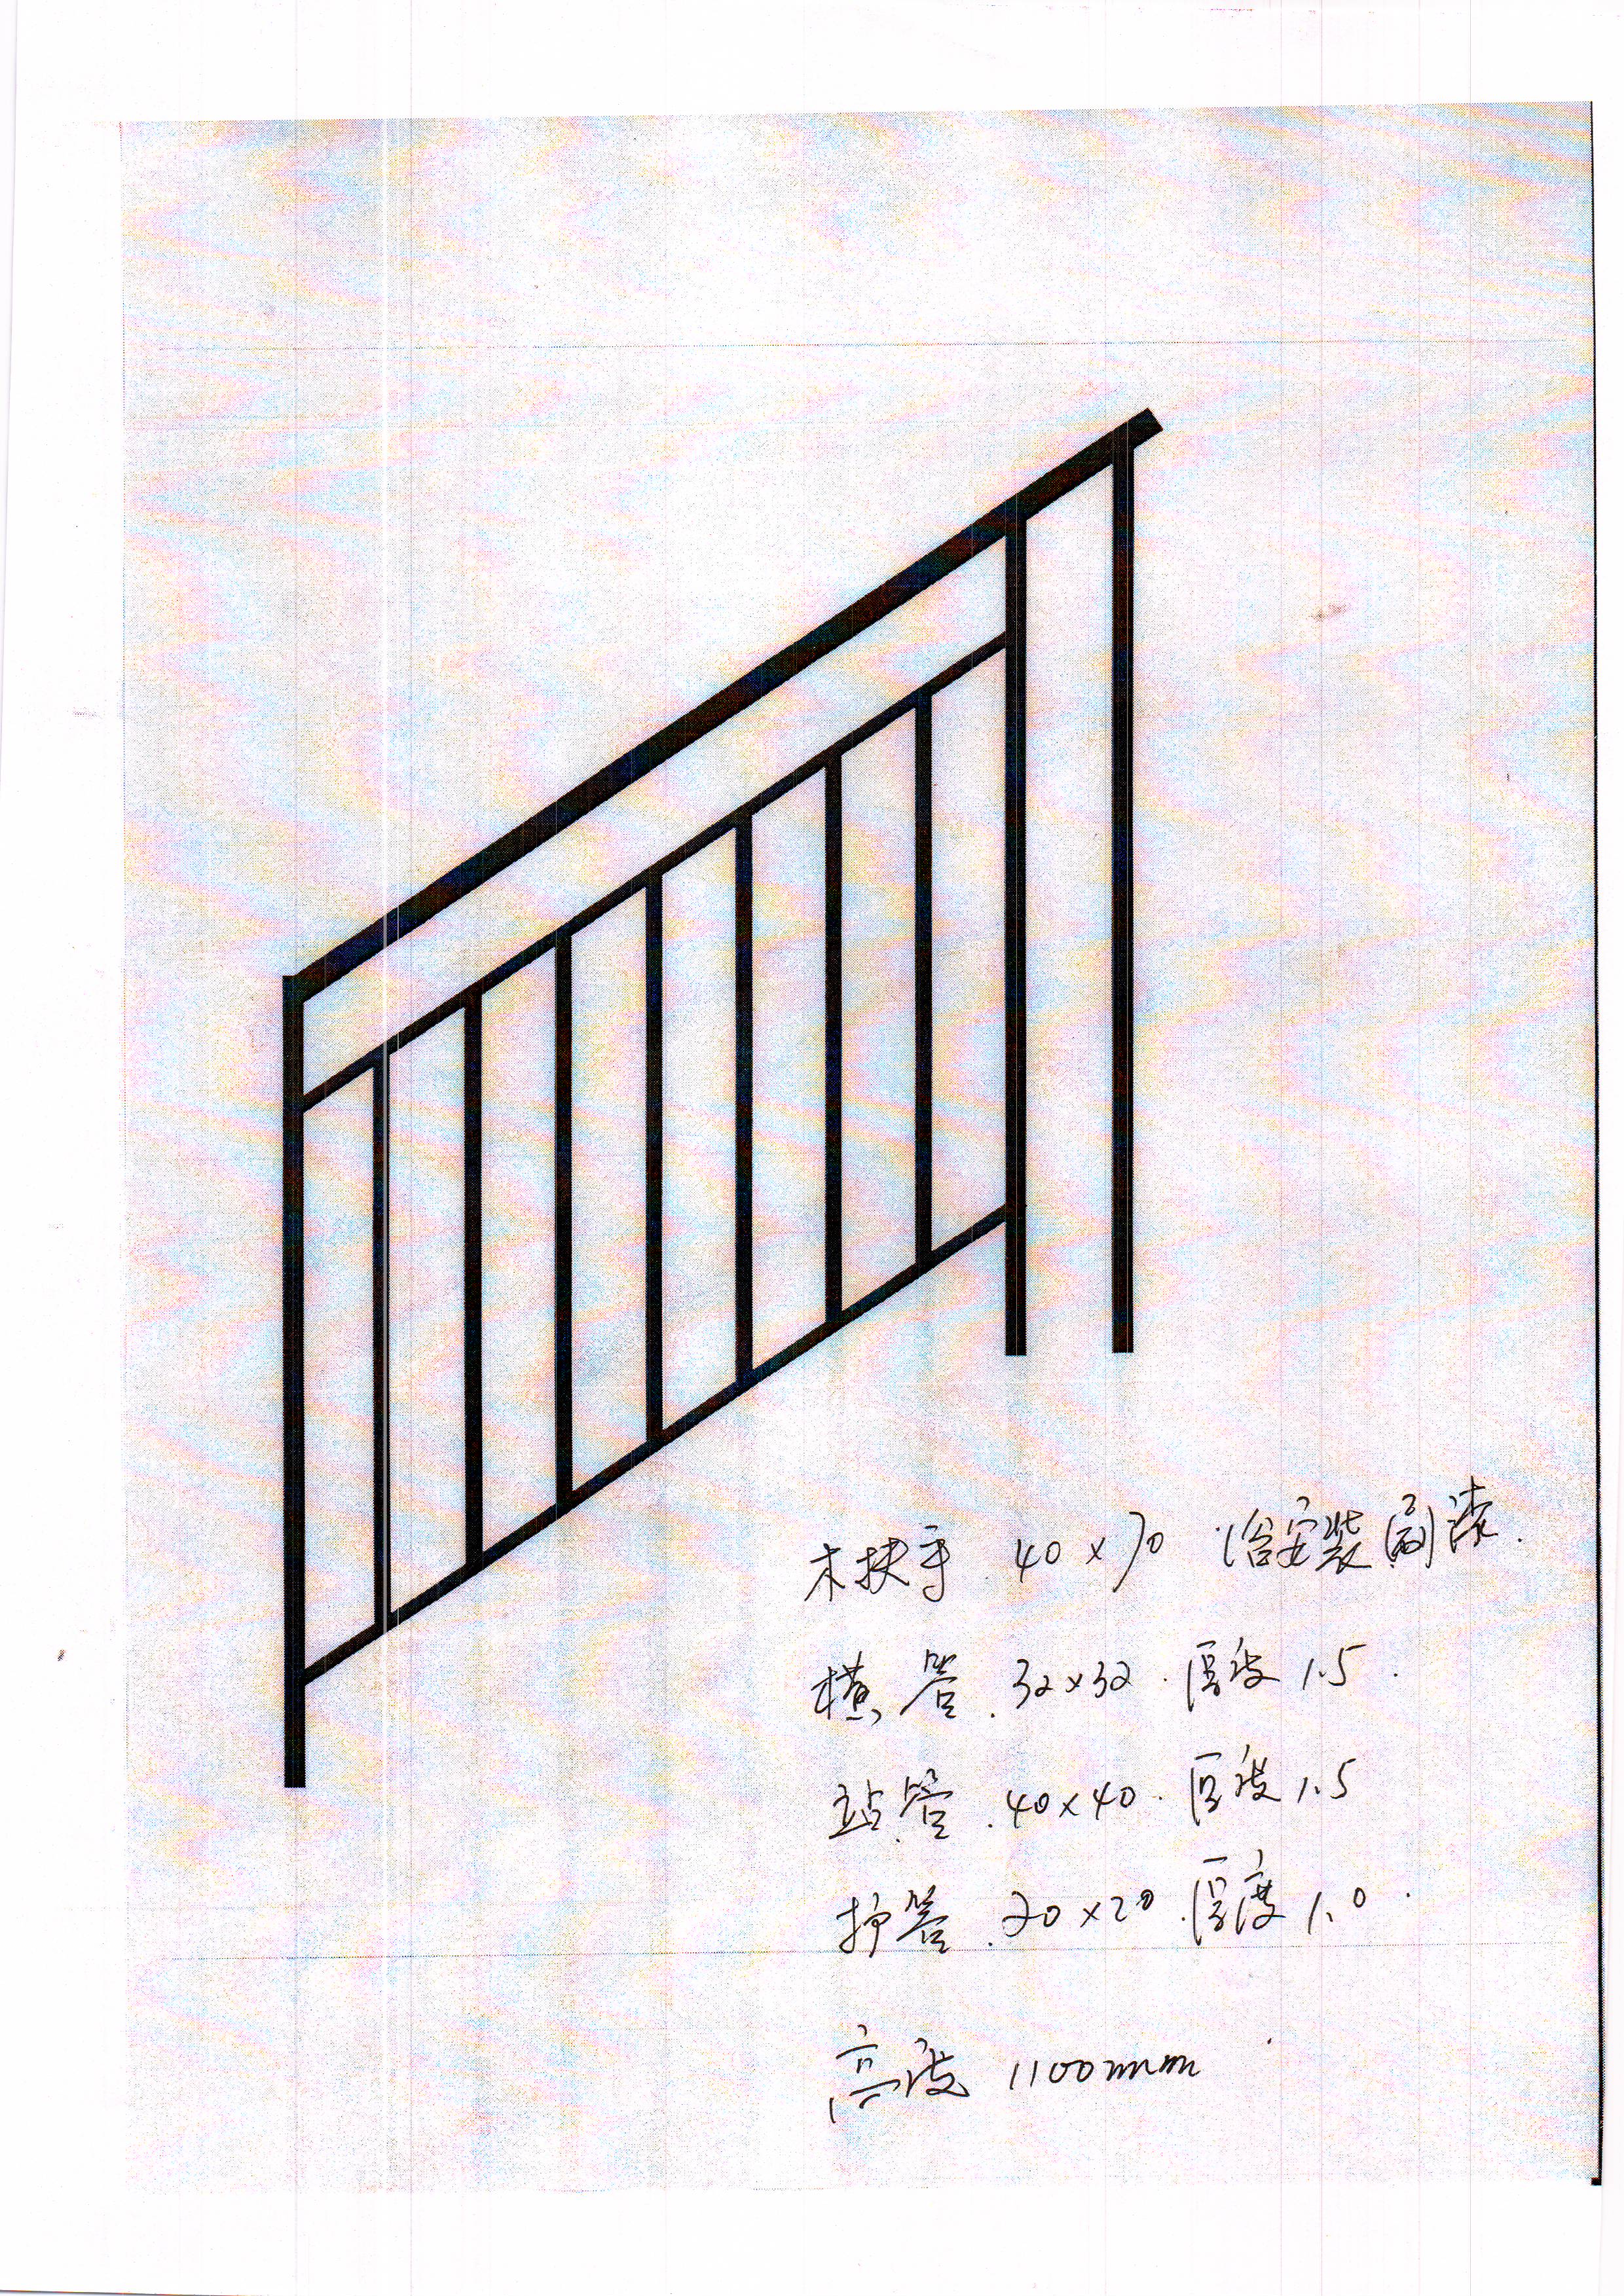 信用等级: 暂未纳入信用体系 类别: 栏杆,栏板 规格: 高度:1100mm;木